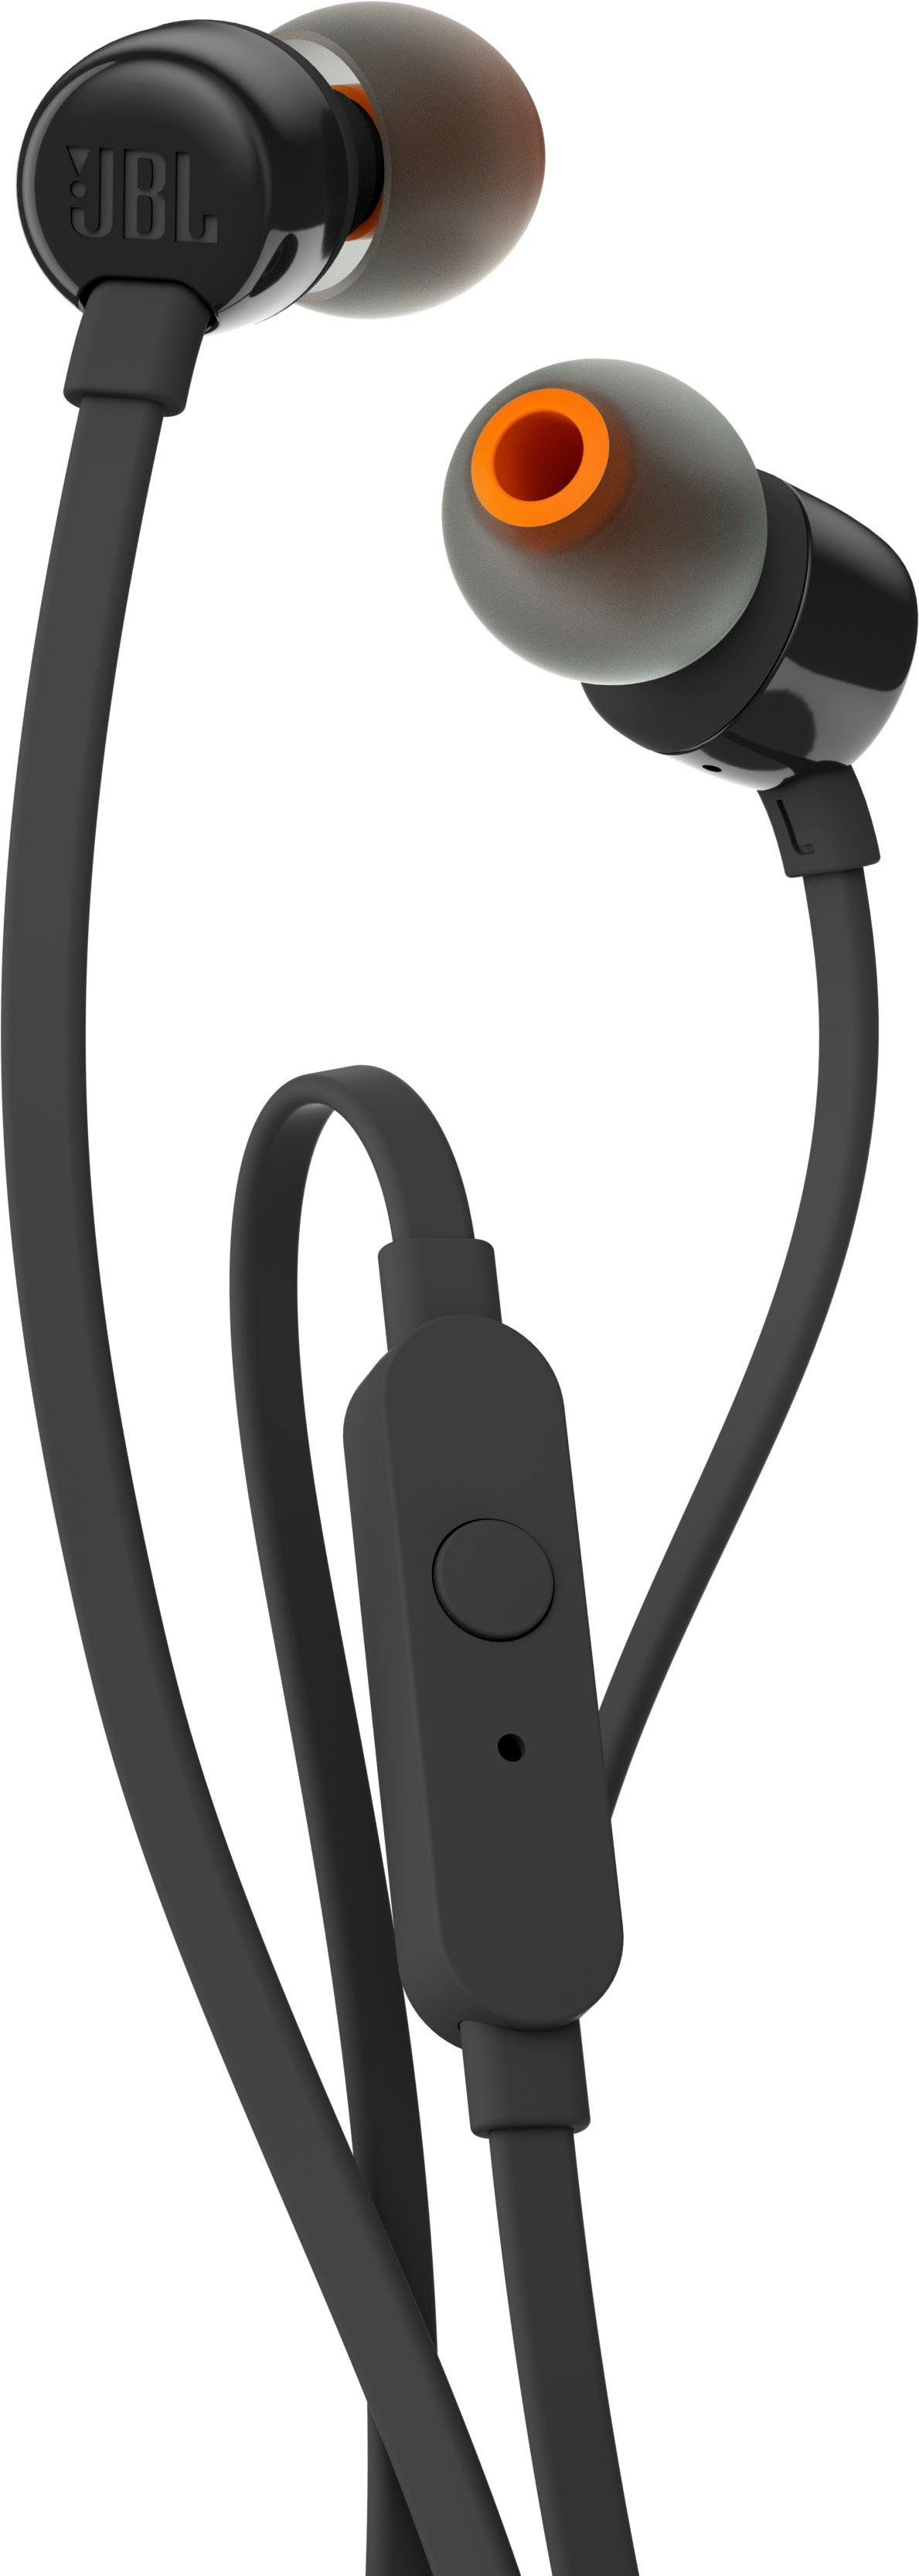 JBL T110 In-Ear-Kopfhörer schwarz | In-Ear-Kopfhörer